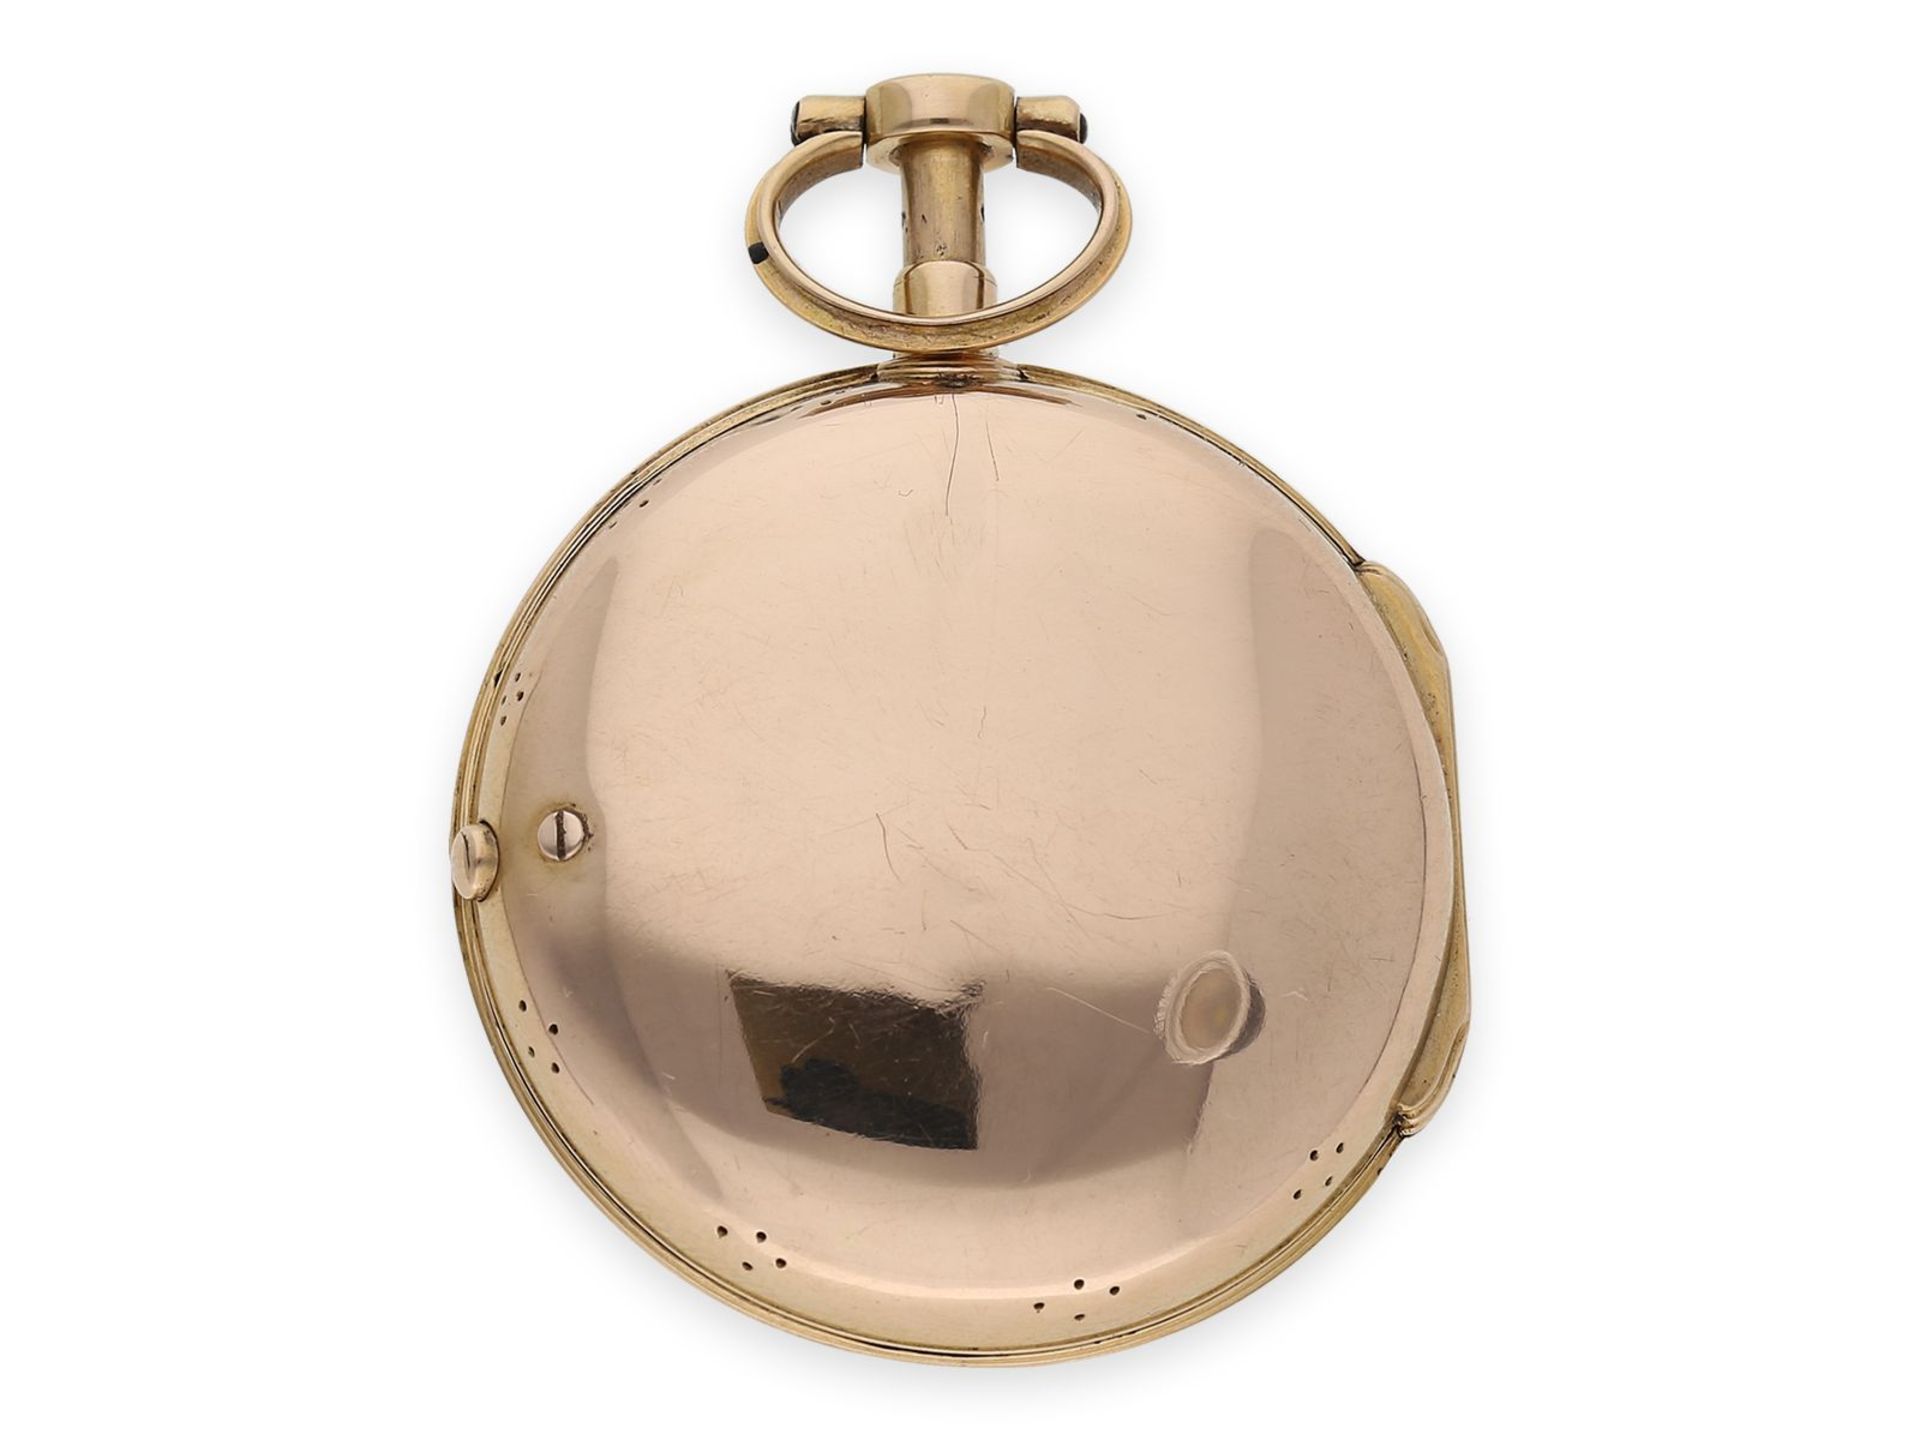 Taschenuhr: hochfeine goldene Louis XV Spindeluhr mit Repetition a toc et a tact, signiert L'Epine - Bild 4 aus 4